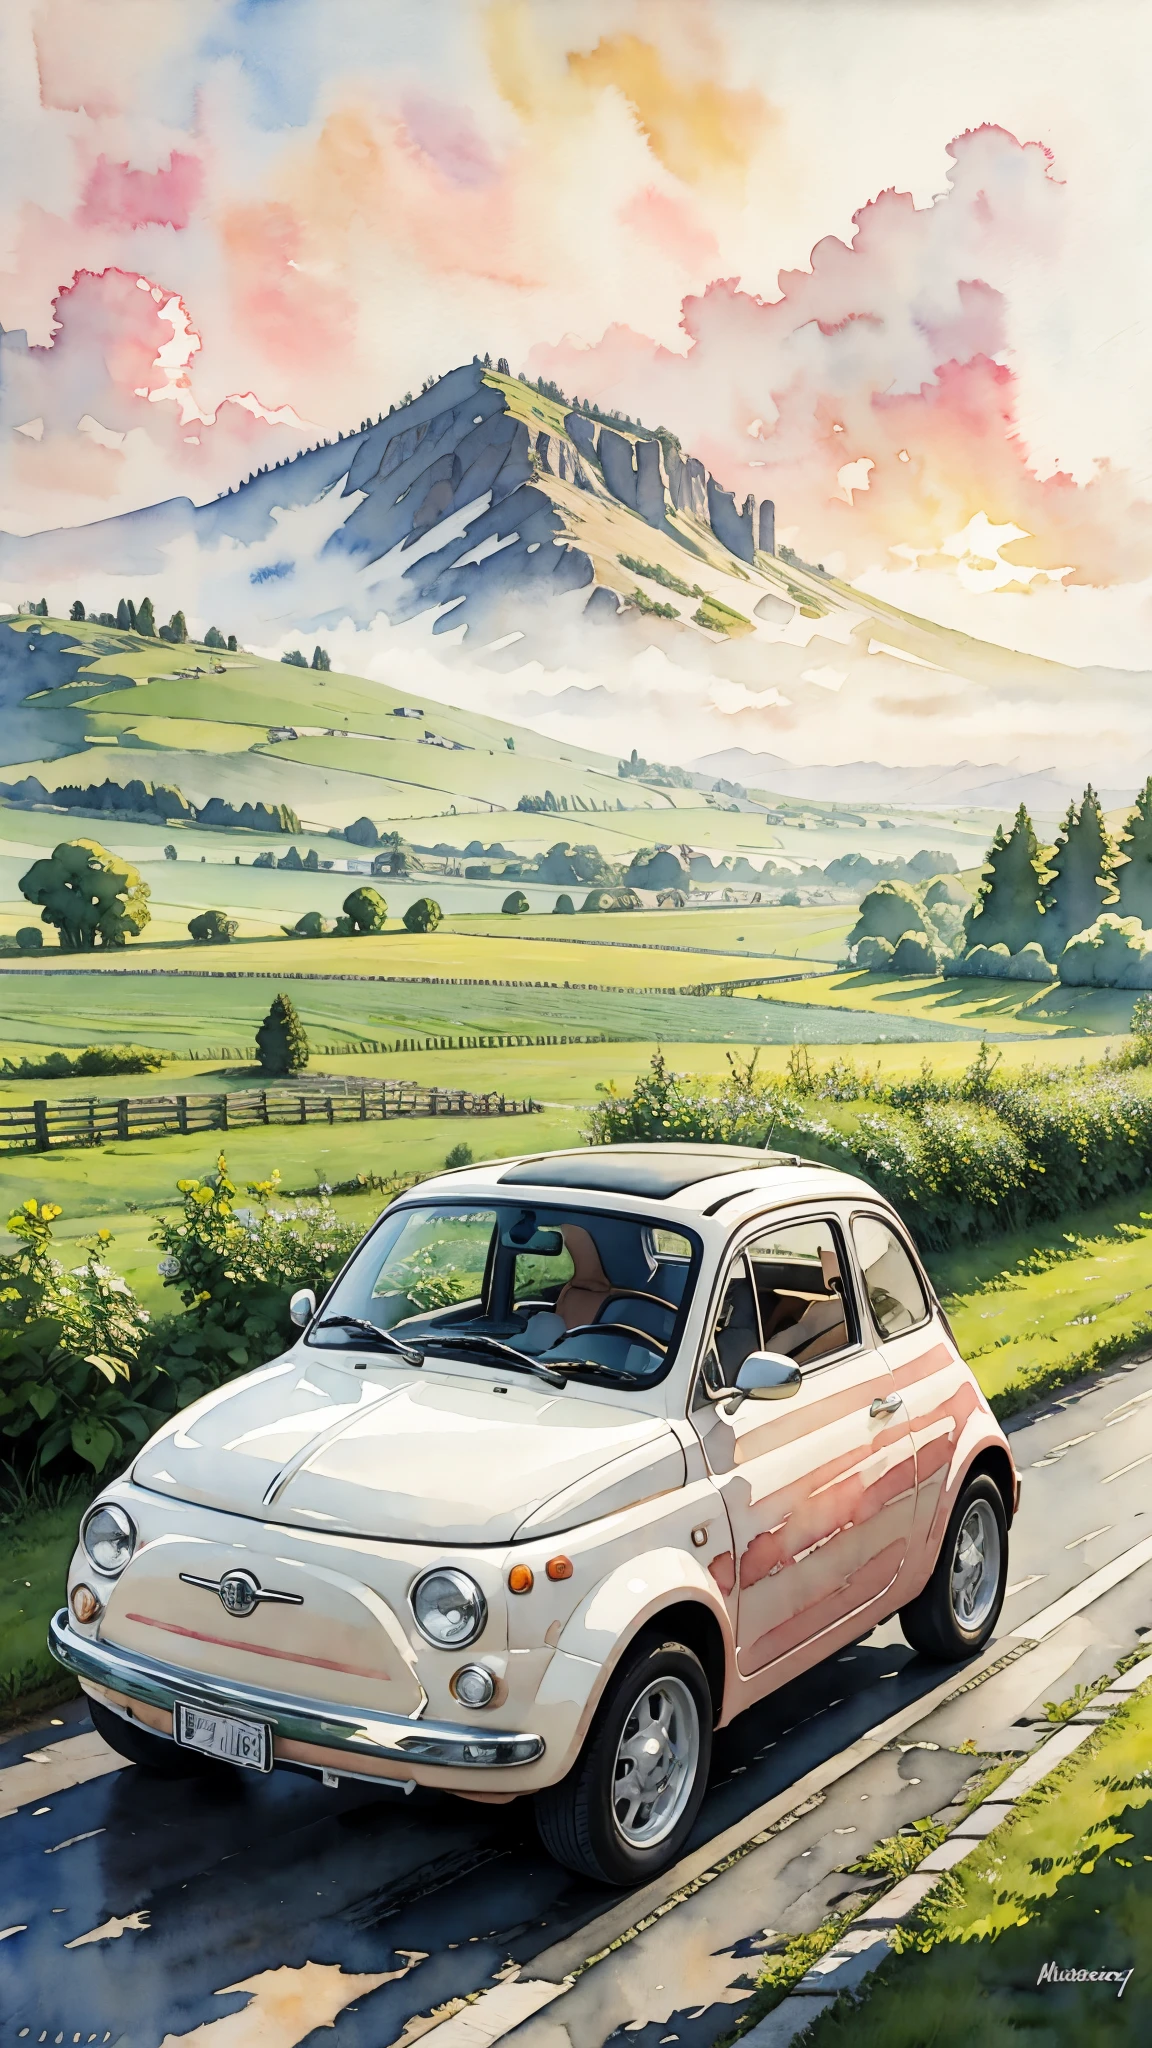 (Meisterwerk:1.2, höchste Qualität),(Sehr detailiert),(((Aquarell))),8K,HINTERGRUND,Ein cremefarbener Fiat 500 fährt durch die Landschaft,Sonnenuntergang,(((Ghibli-Stil))),透明Aquarell